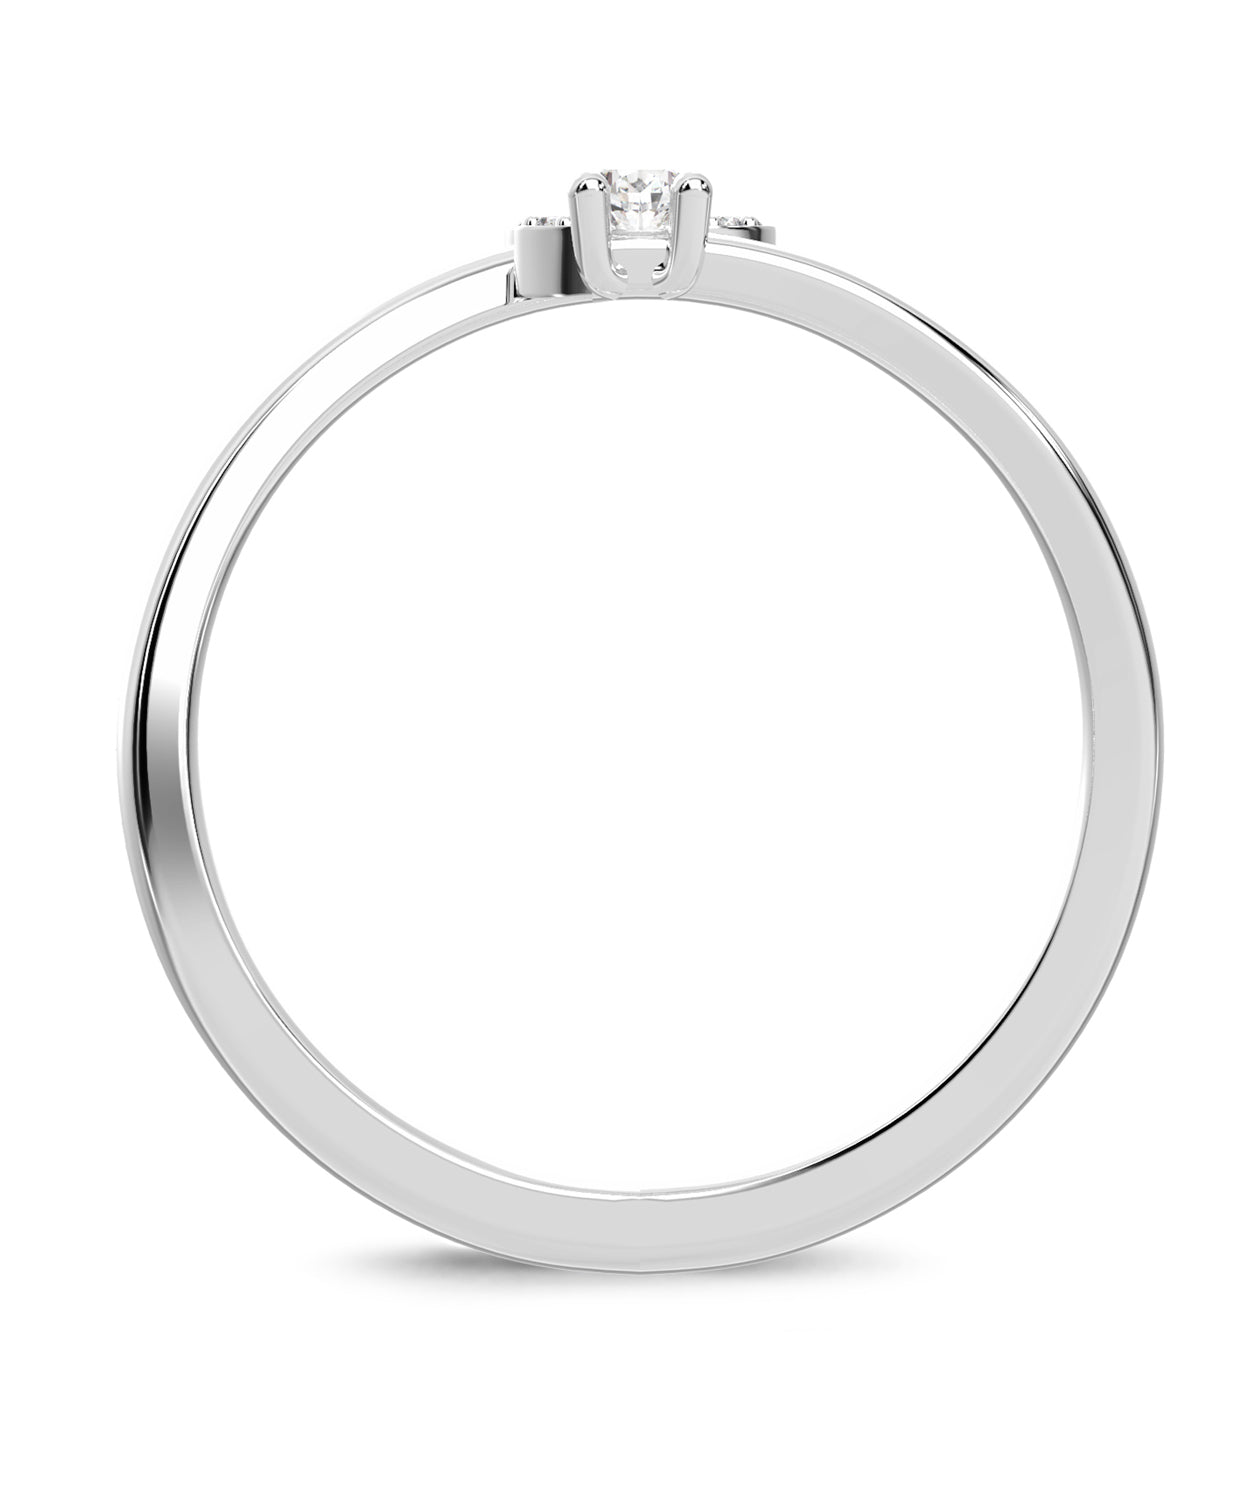 ESEMCO Diamond 18k White Gold Letter S Initial Open Ring View 2